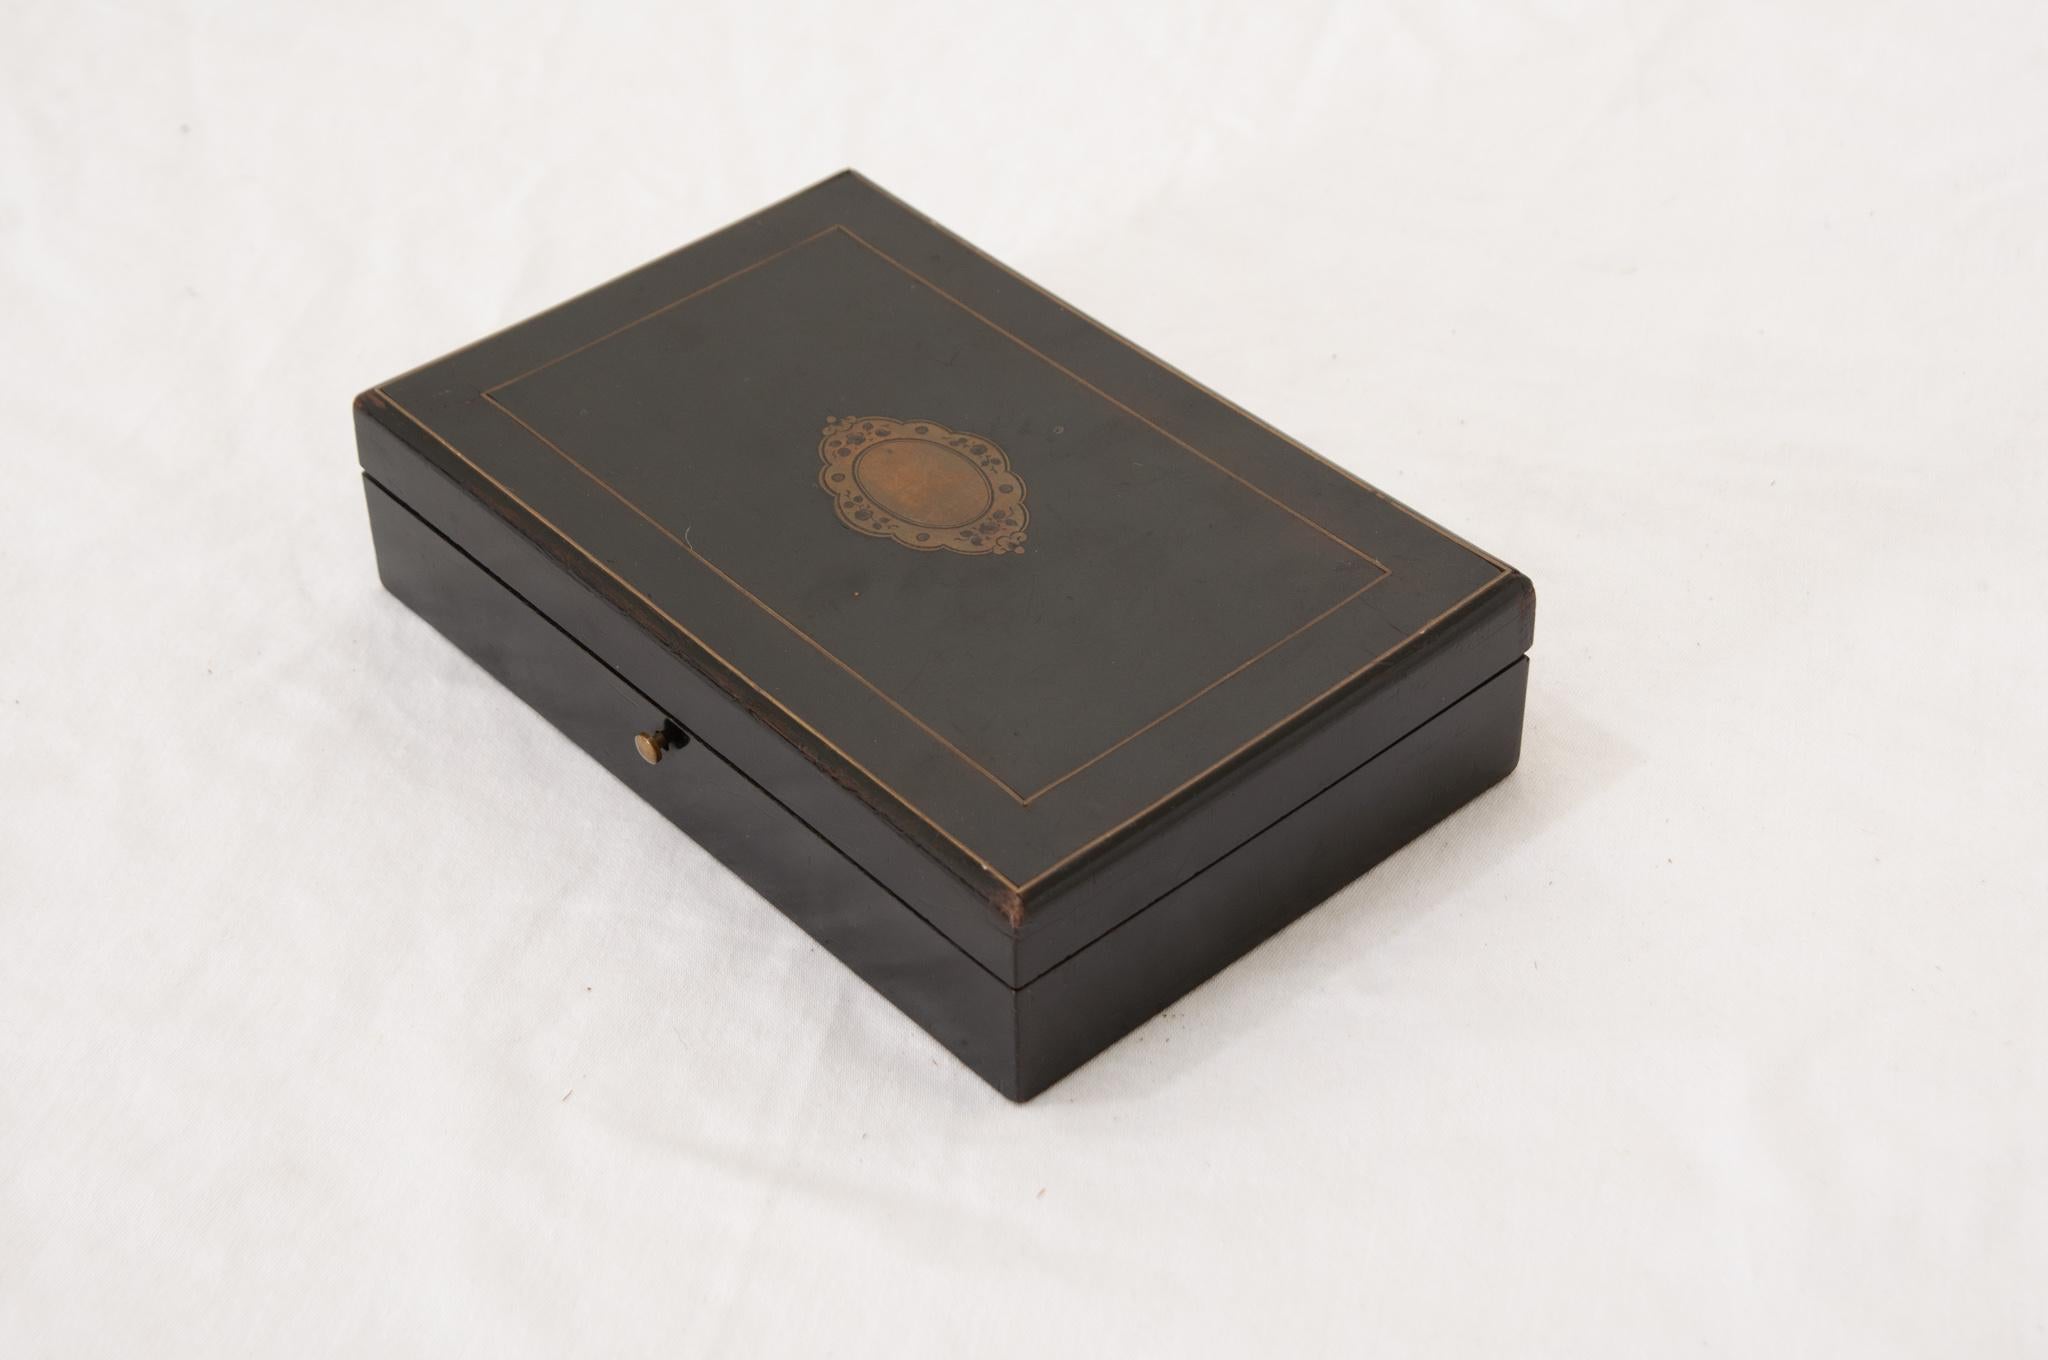 Boîte décorative française du 19e siècle s'ouvrant sur des charnières en laiton. A l'intérieur, la boîte est équipée de deux niveaux de rangement avec cinq compartiments. Il est probablement utilisé pour ranger des bijoux. Ce beau coffret est en